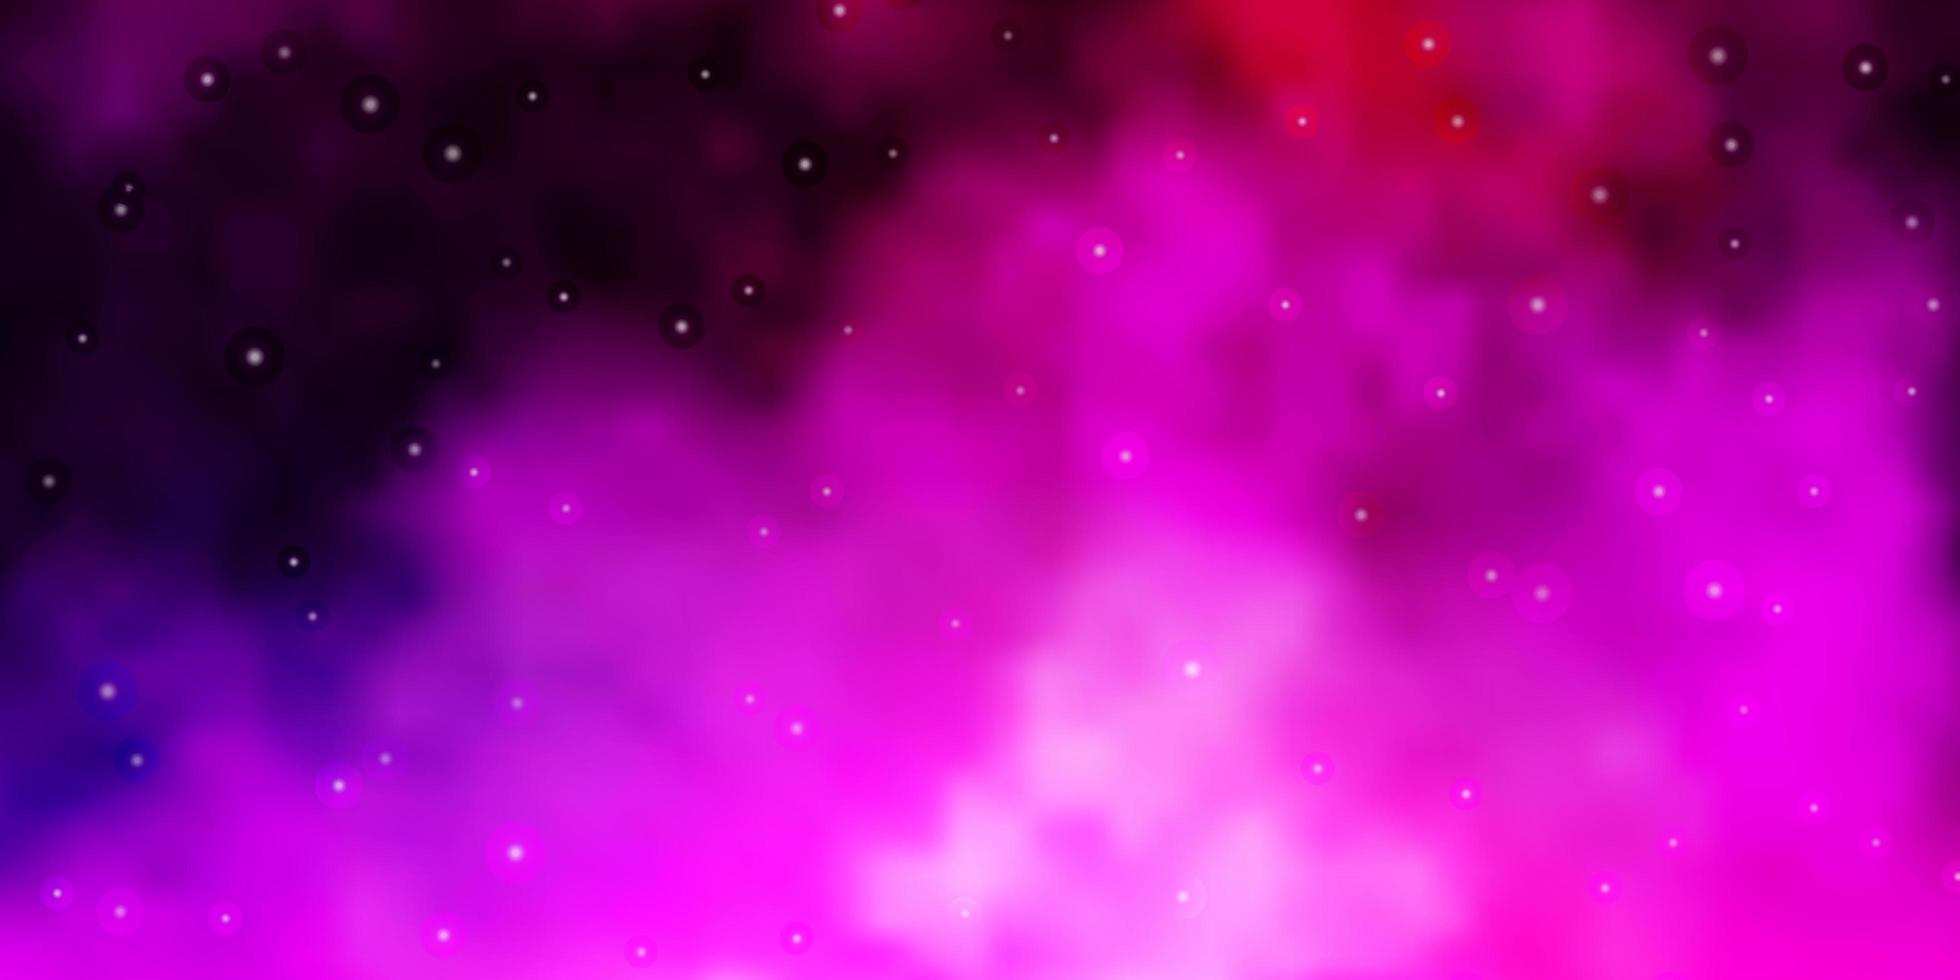 Plantilla de vector violeta, rosa claro con estrellas de neón.